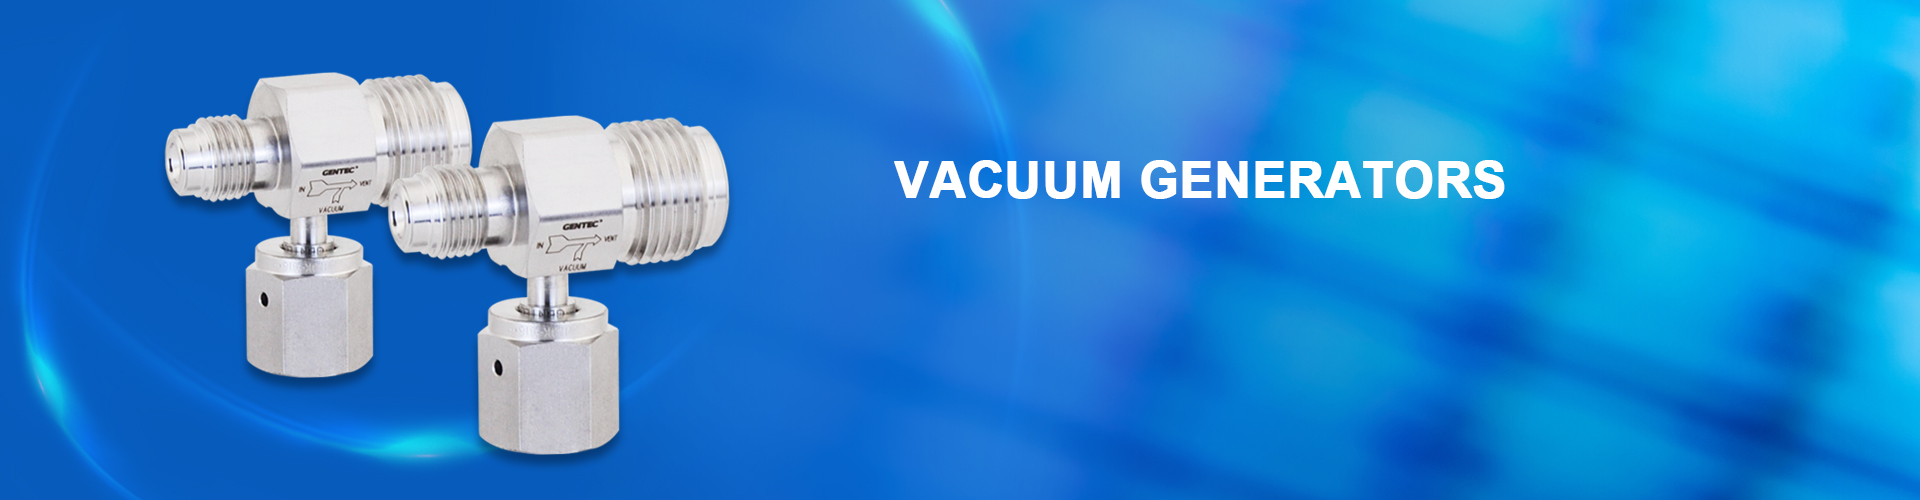 Vacuum Generators